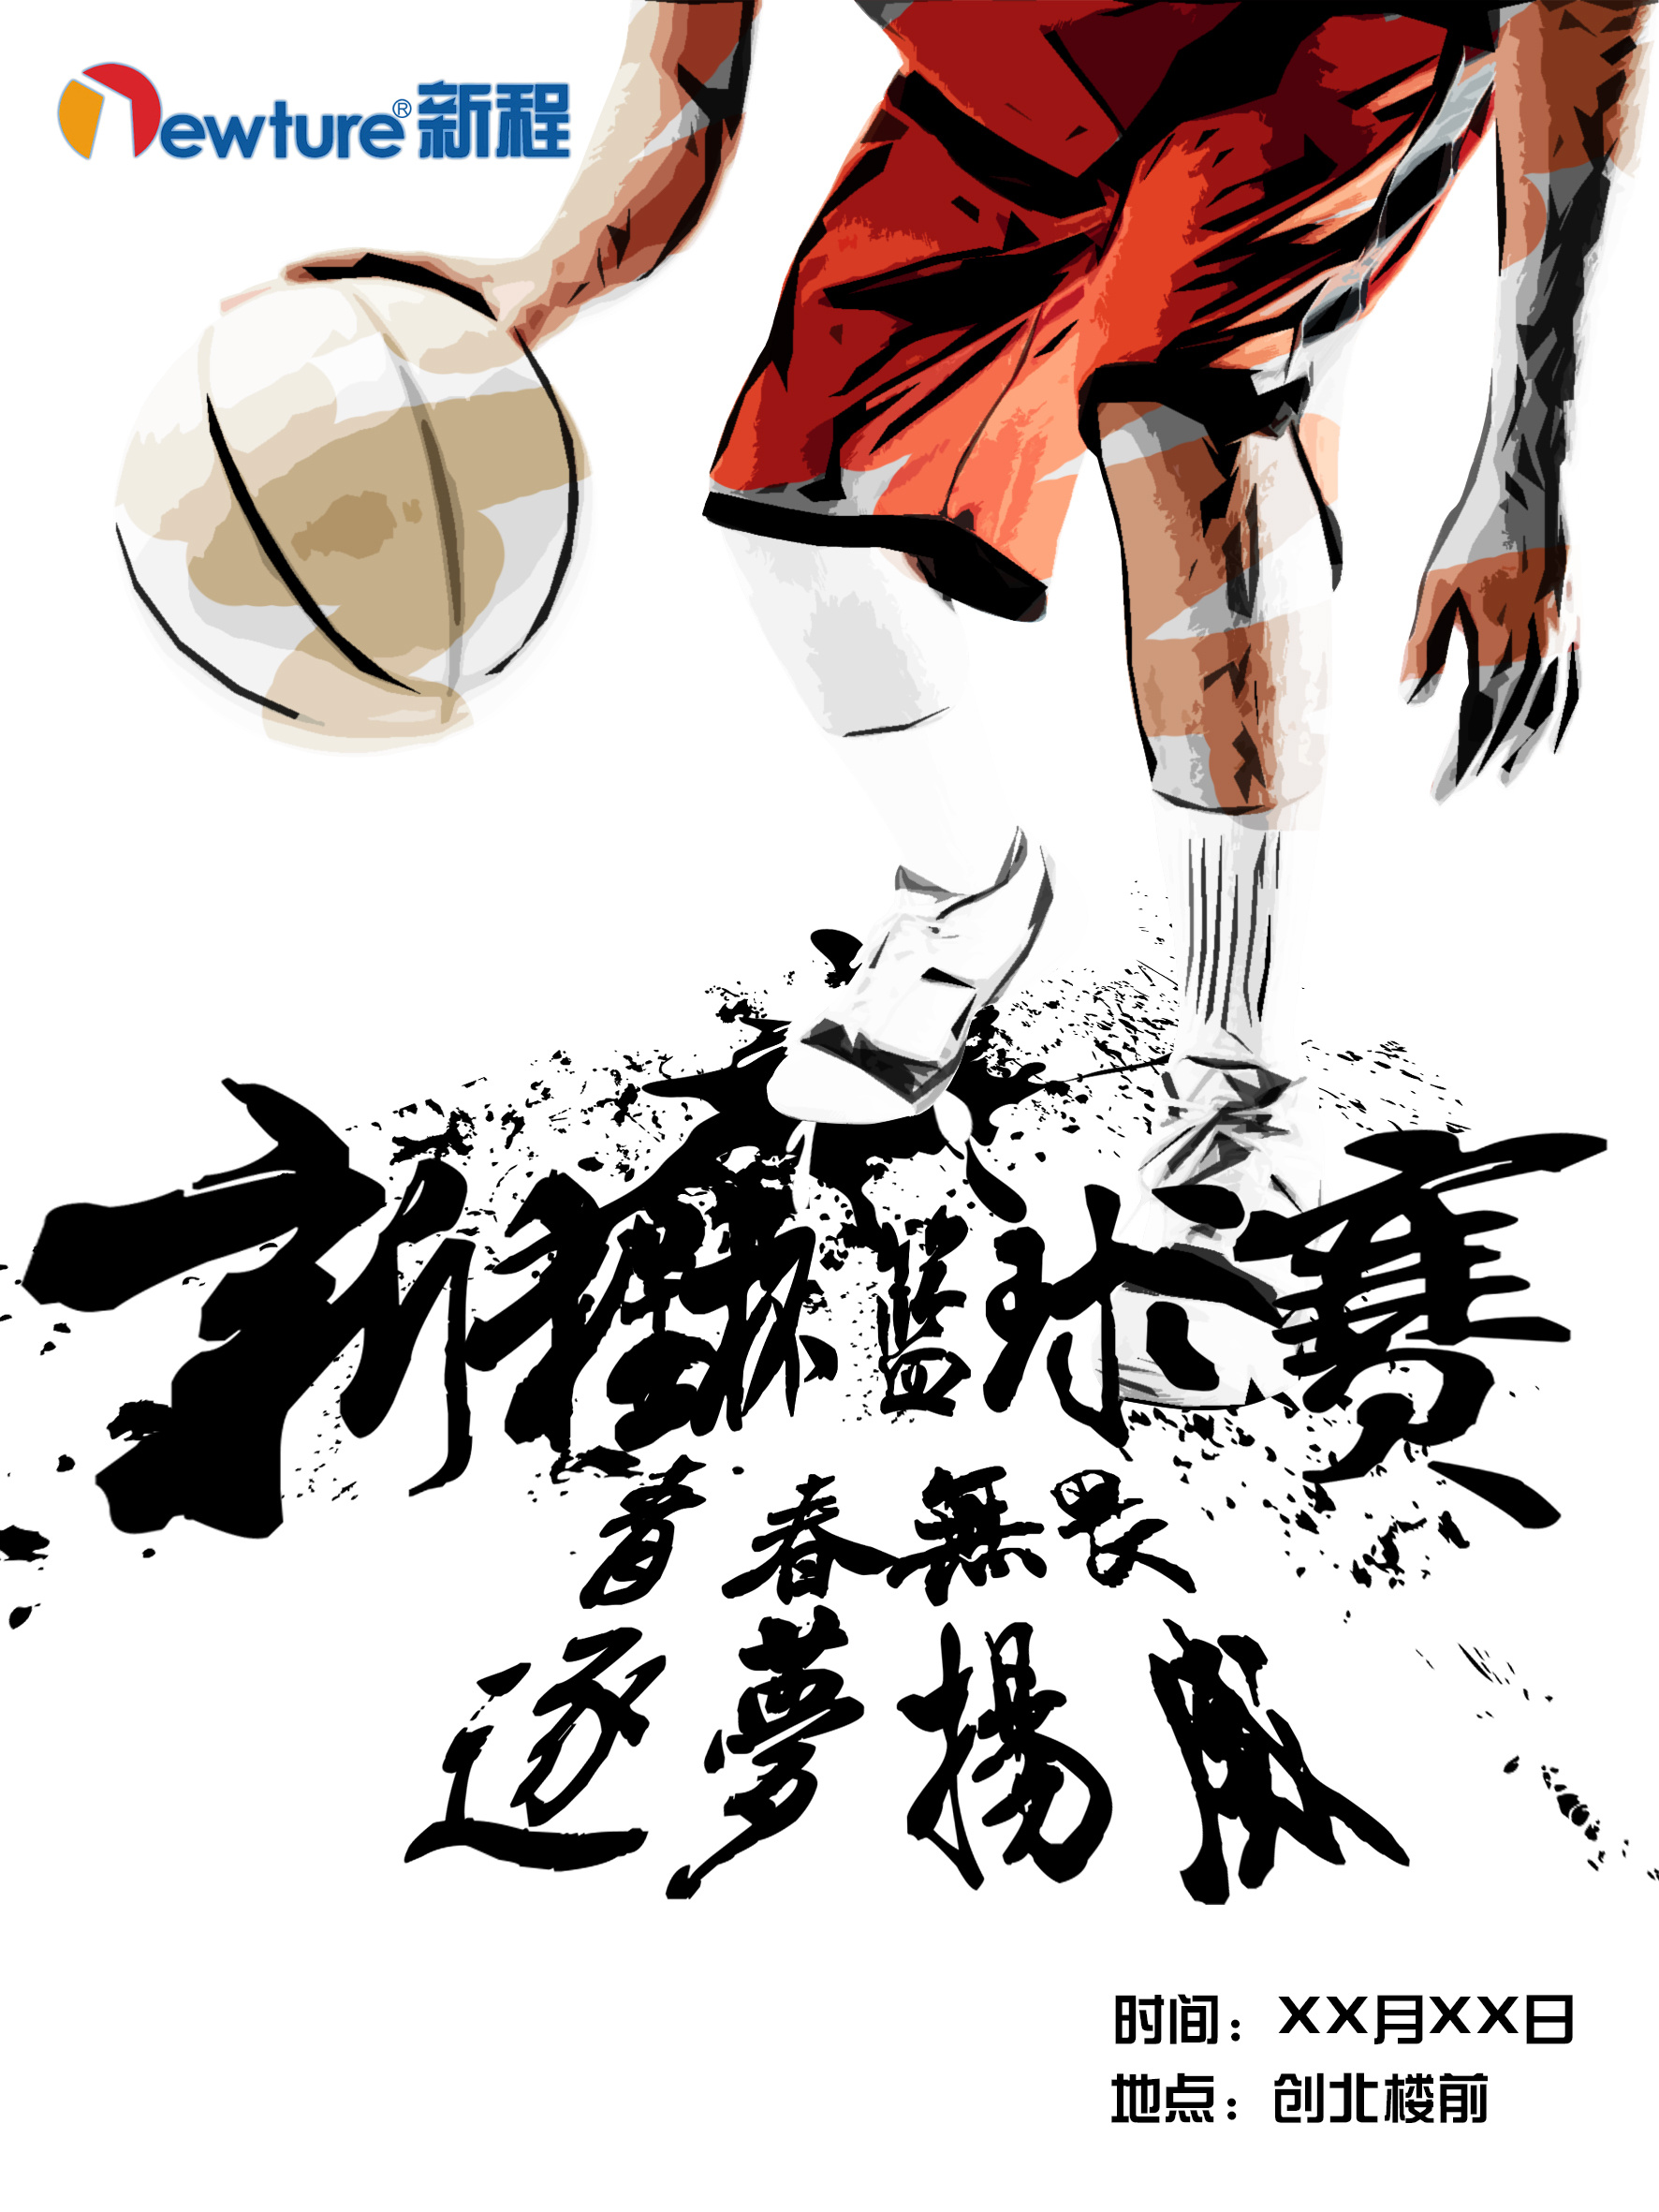 篮球比赛海报图片简单图片